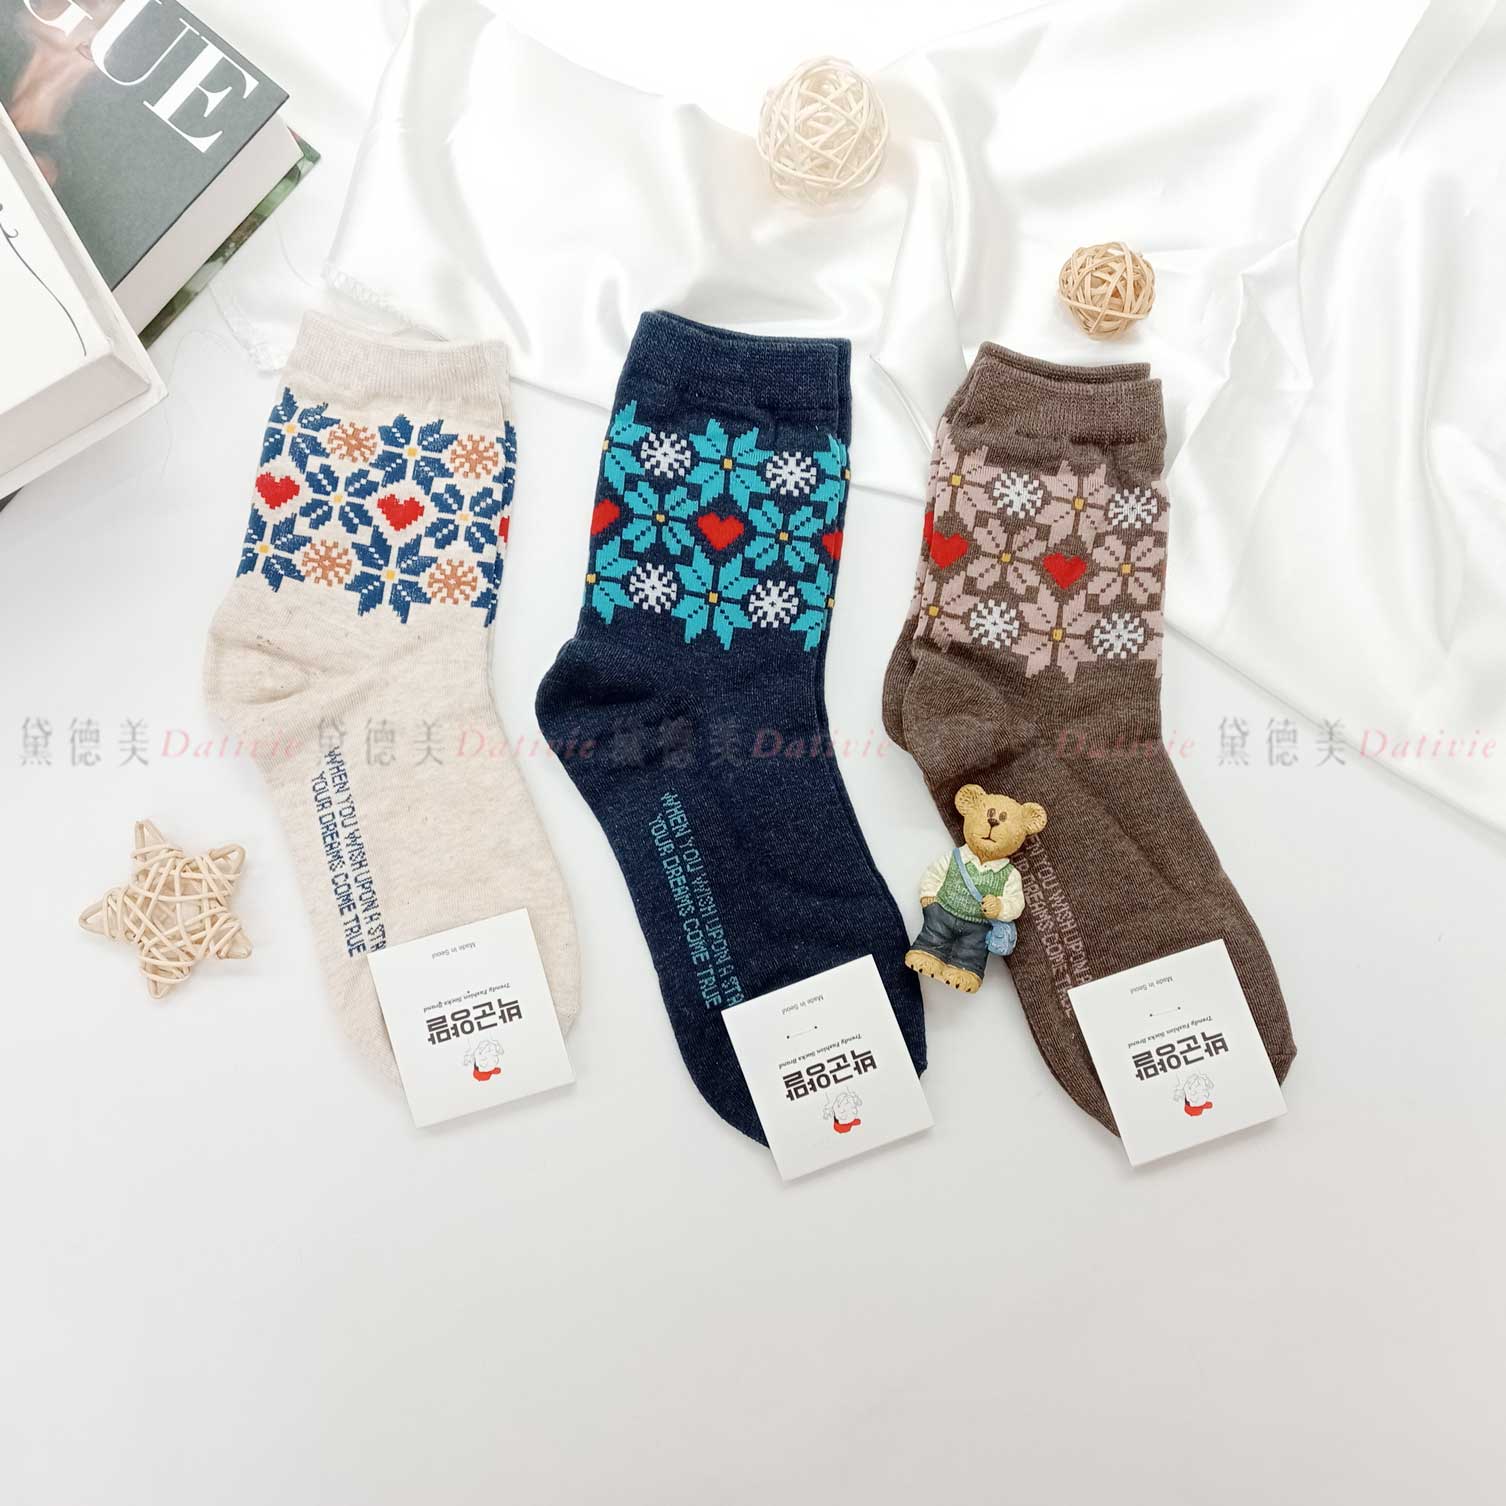 韓國襪 經典 雪花 三色 中統襪